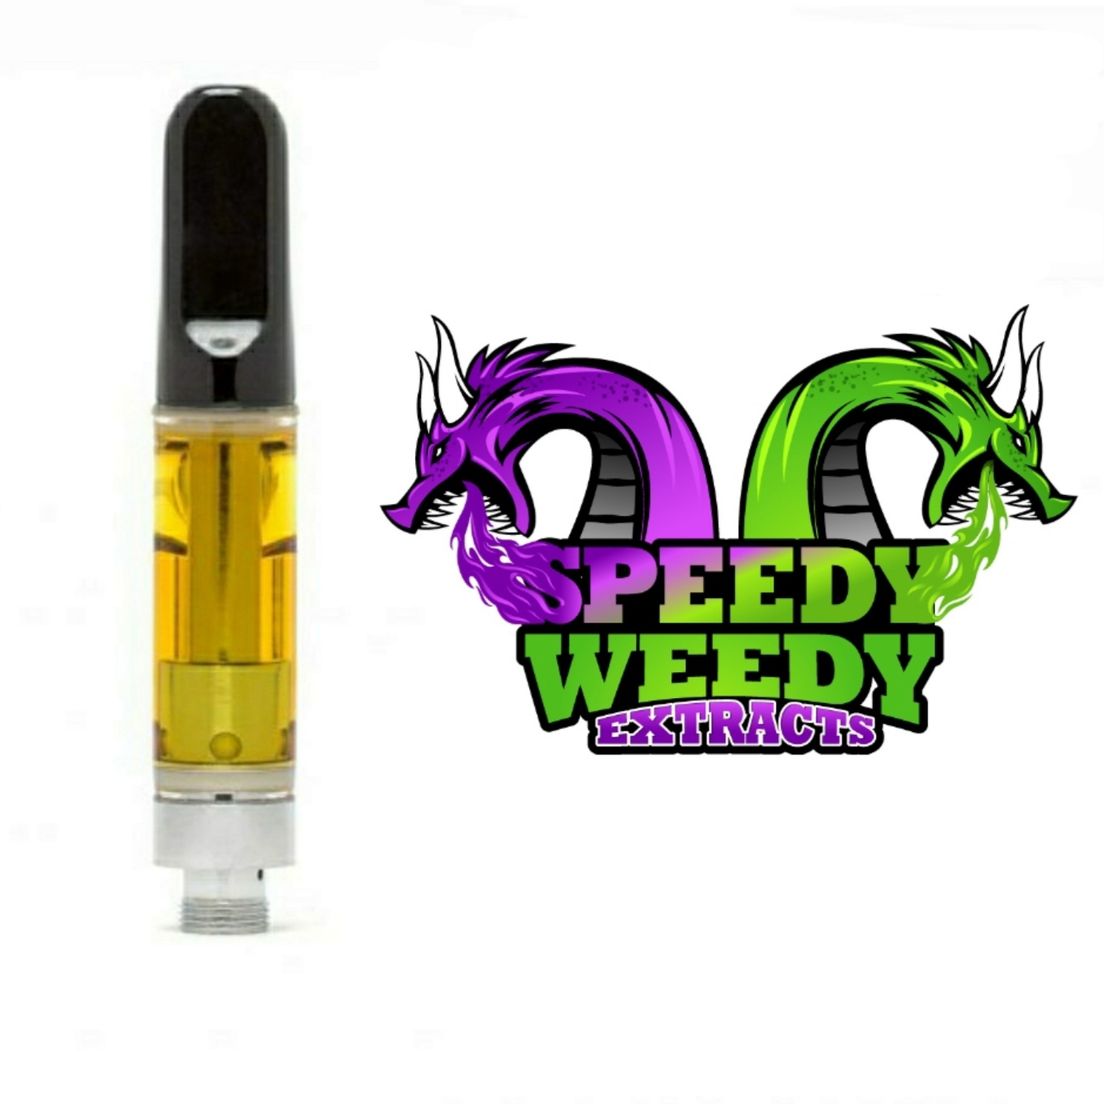 1. Speedy Weedy 1g Cartridge - Clementine - 3/$60 Mix/Match